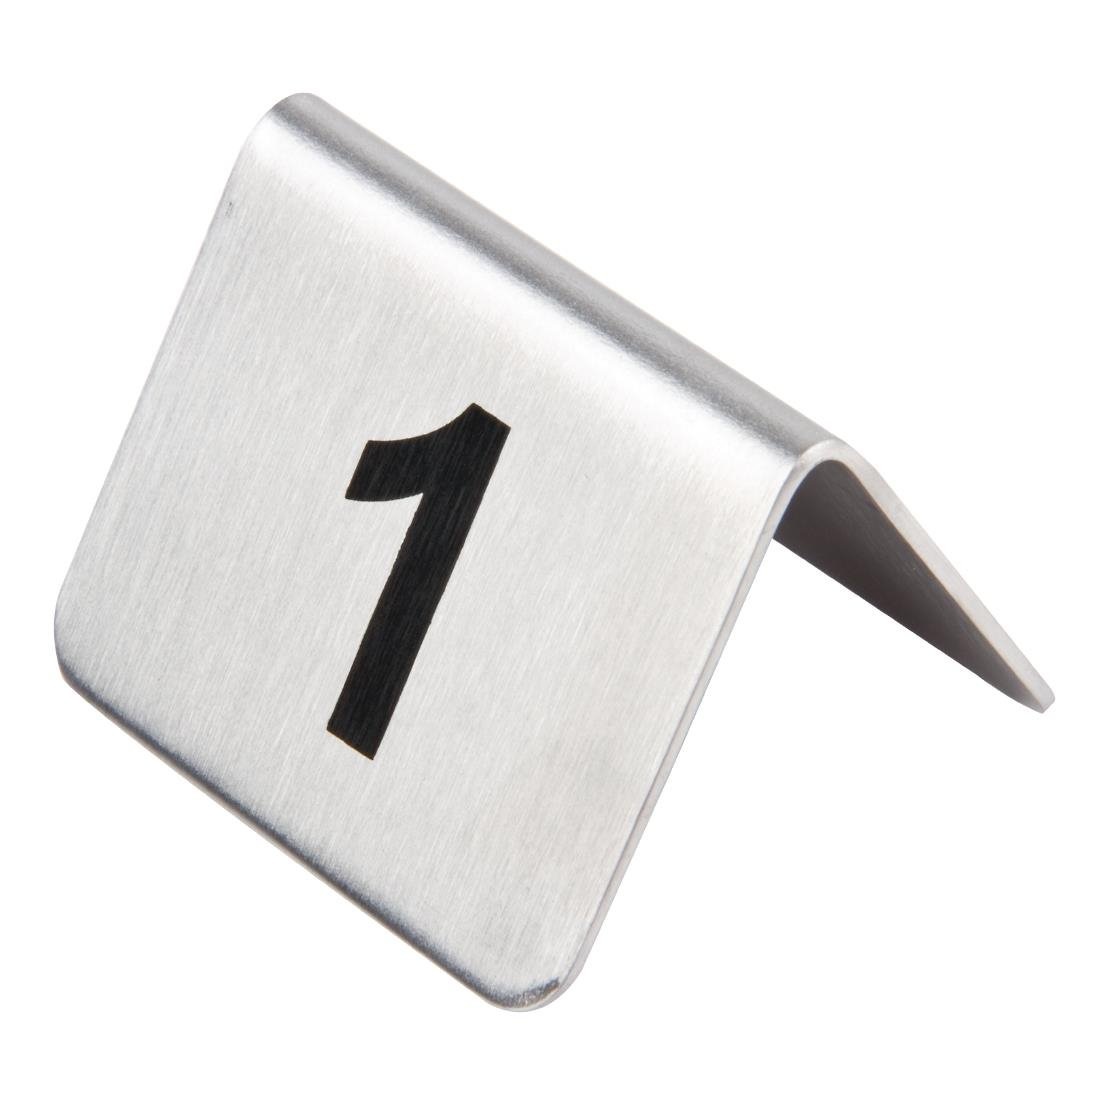 Numéros De Table Inox - Olympia - Numéro 11-20